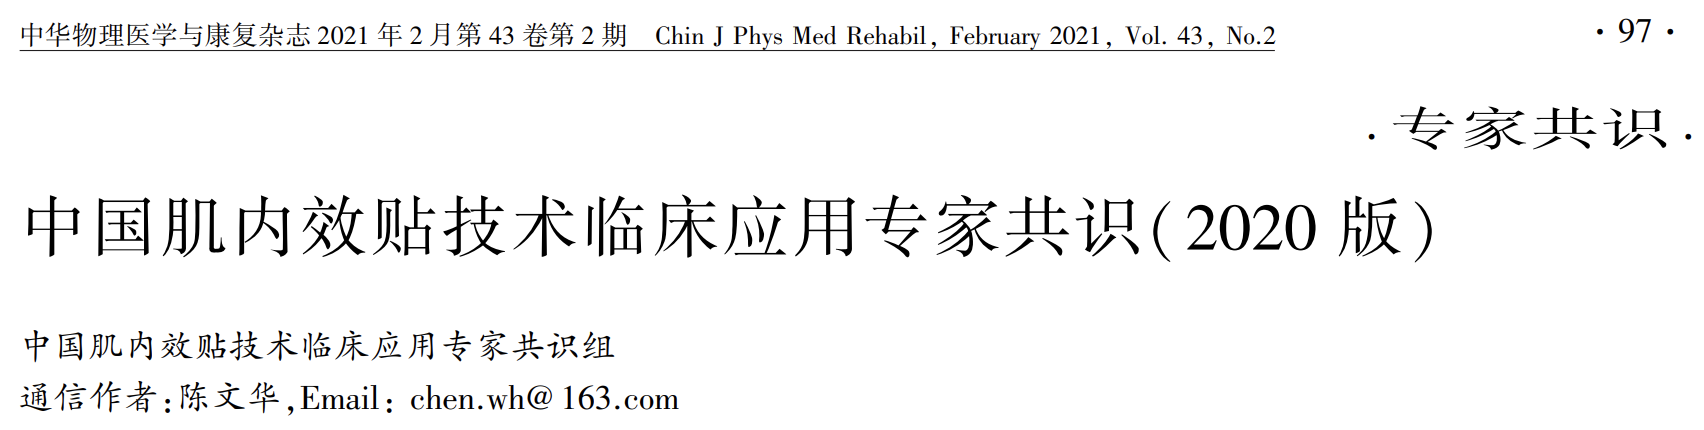 中国<font color="red">肌</font>内效贴技术临床应用专家共识（2020），一文get要点！